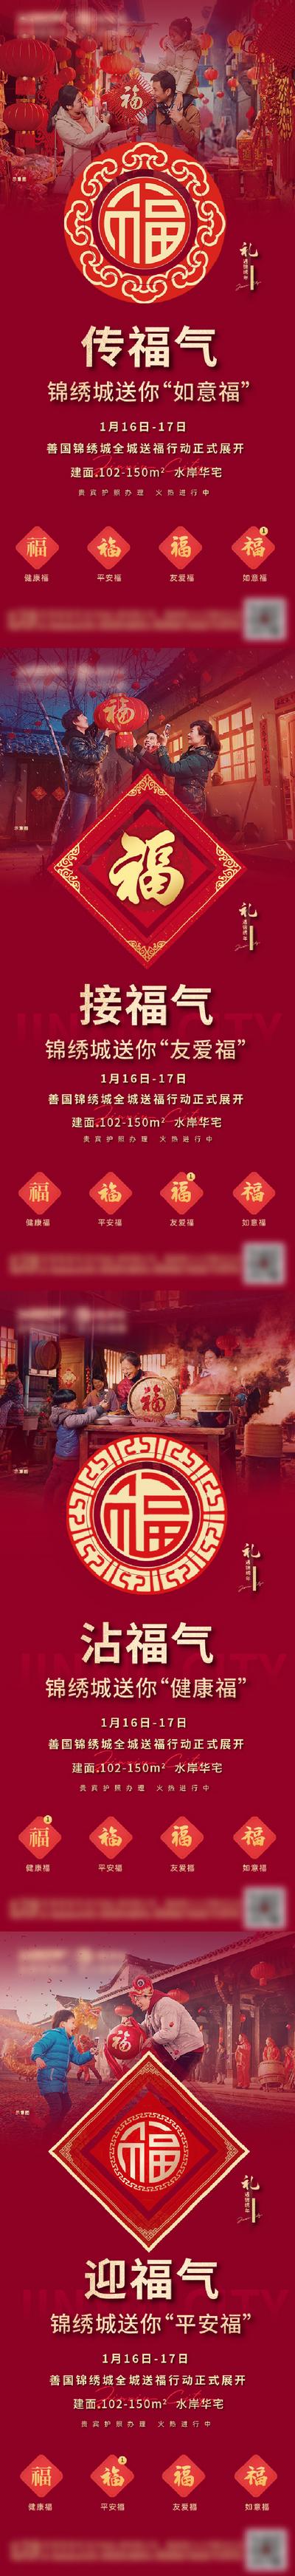 南门网 海报 房地产 返乡置业 新年 除夕 中国传统节日 送福 五福 福字 系列